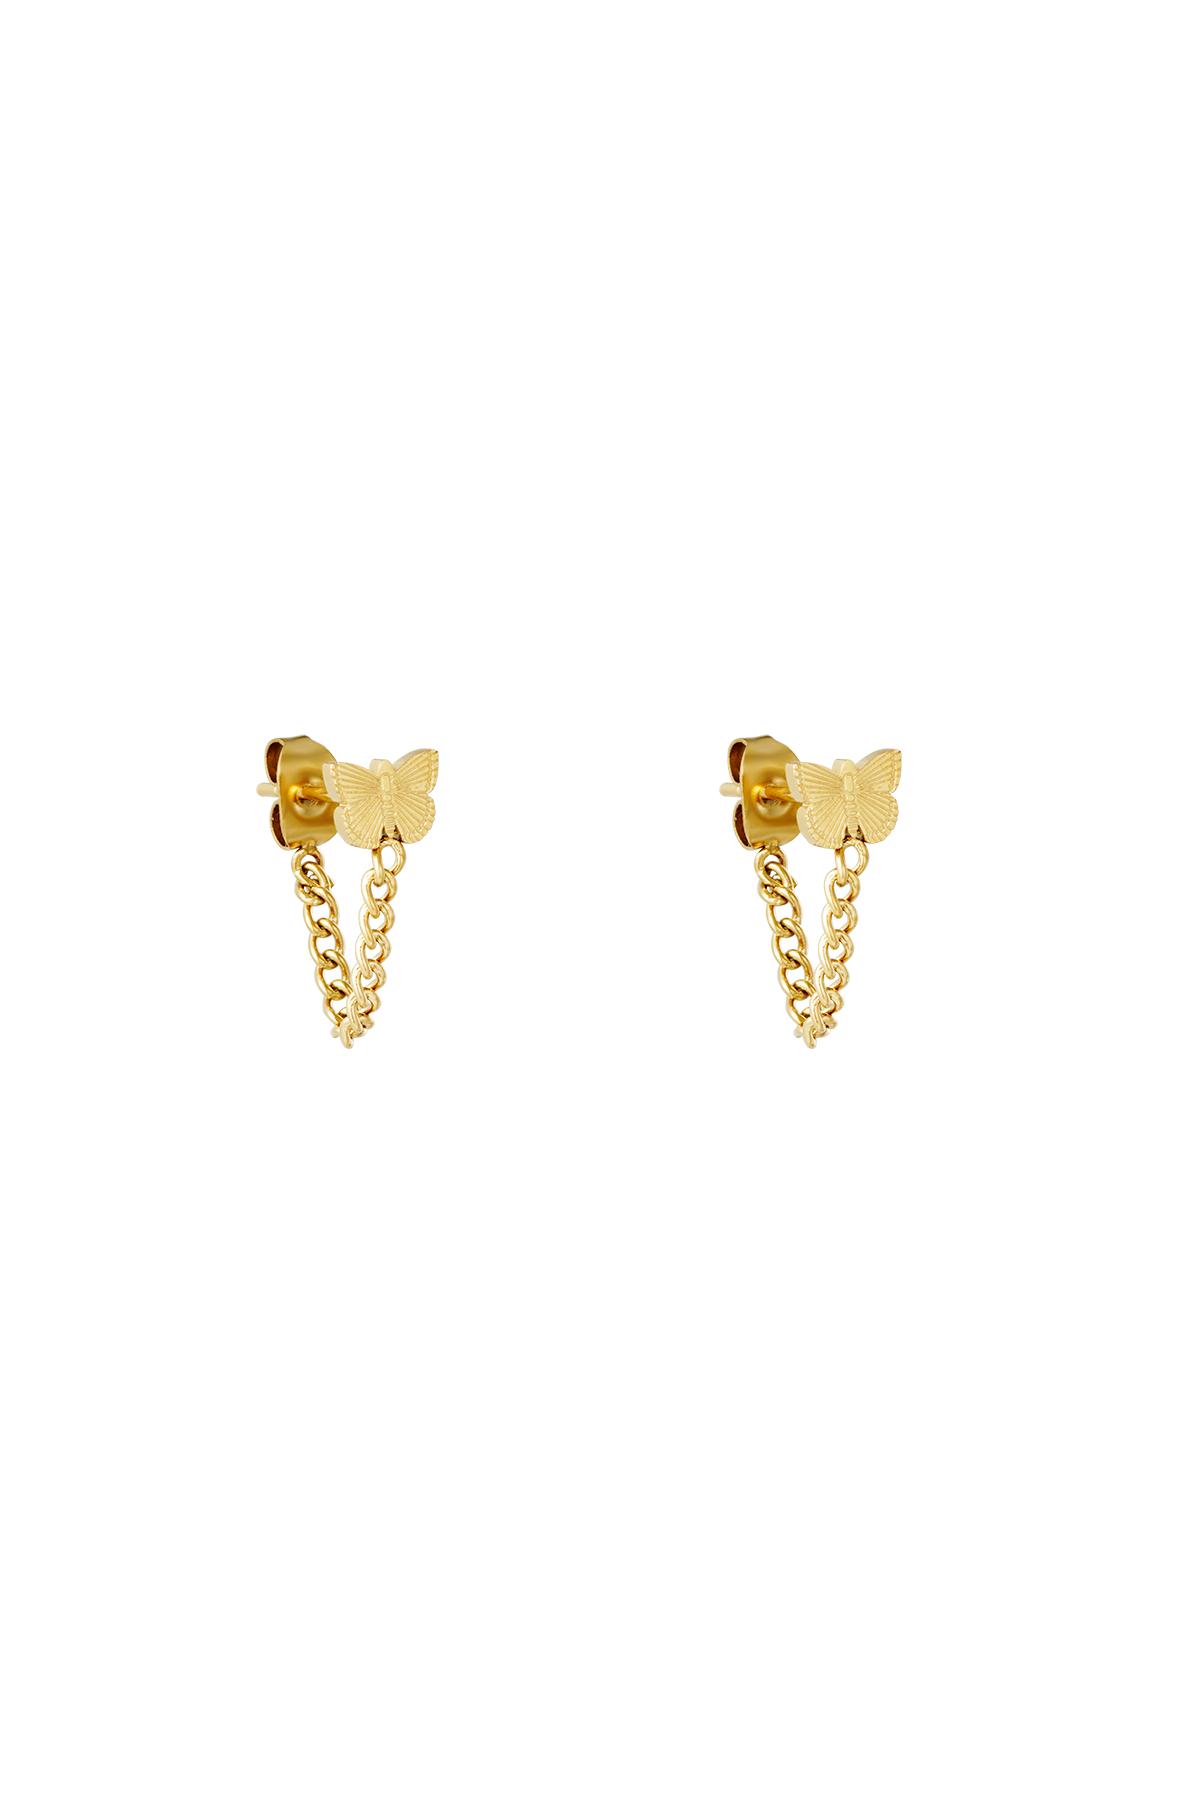 Earrings Butterfly Gold Stainless Steel